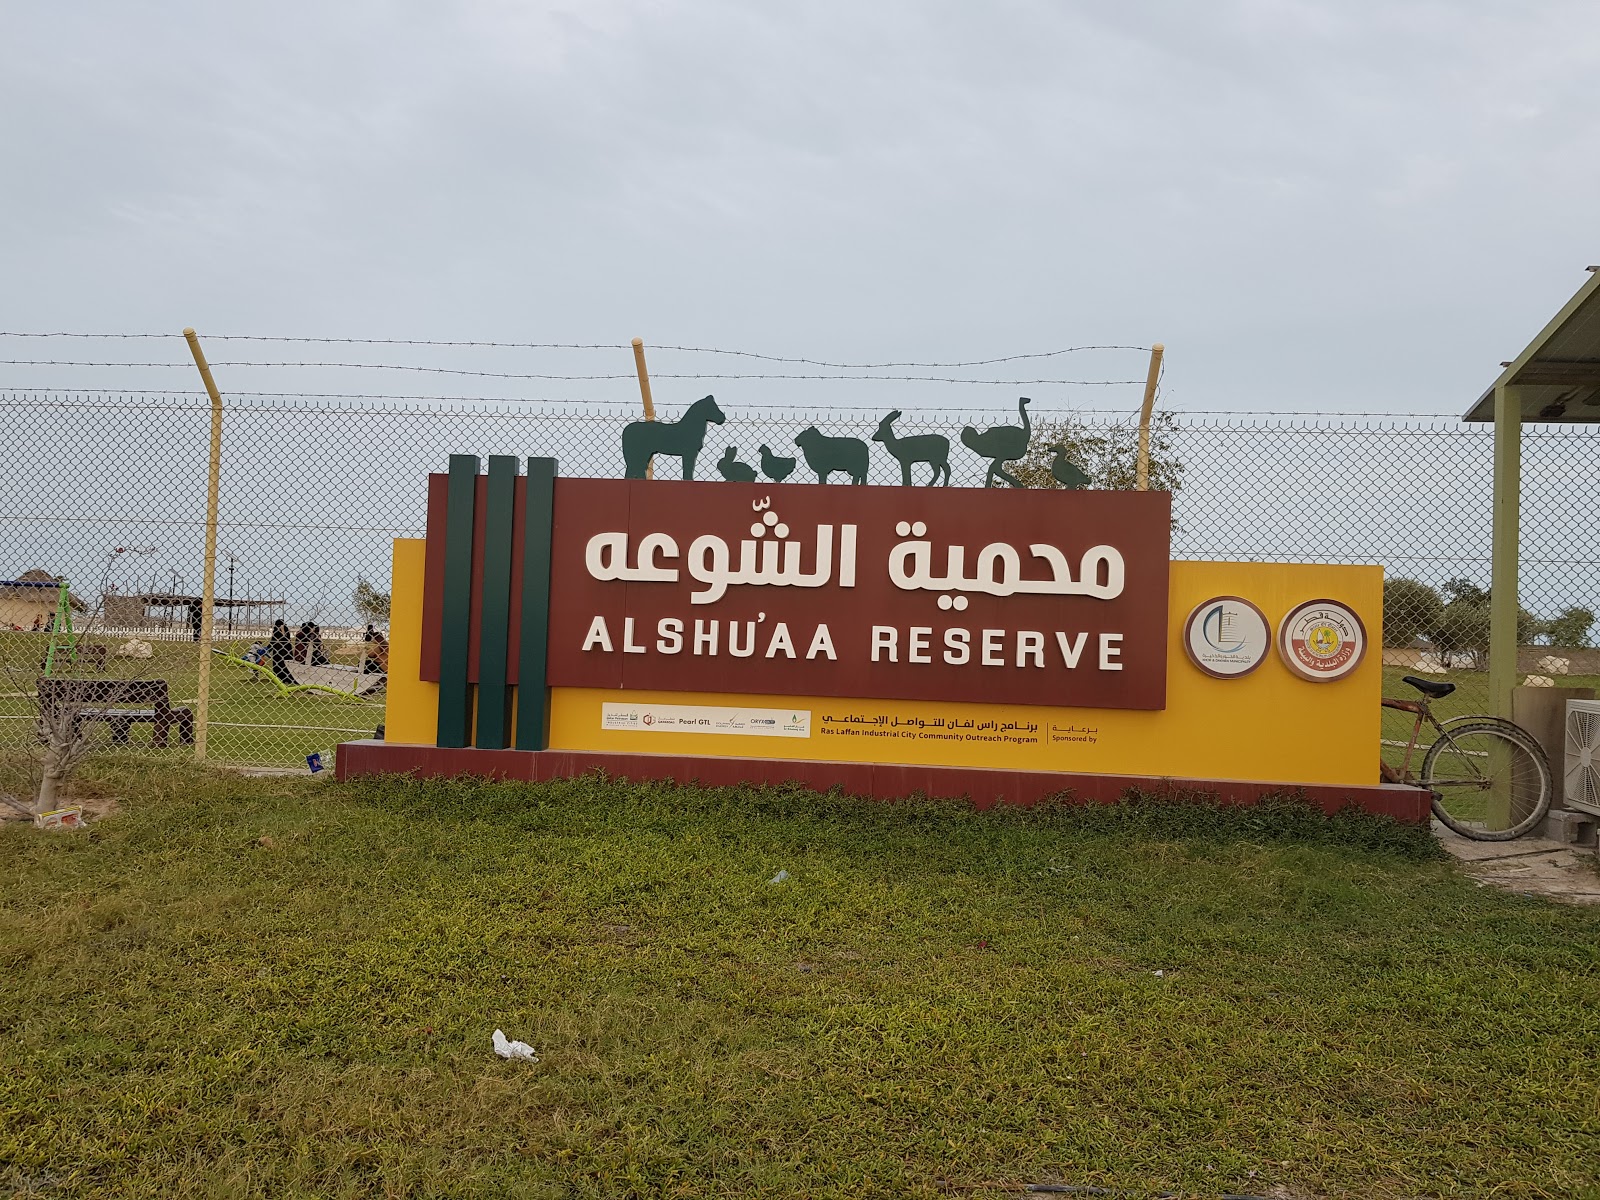 Al Shuaa Reserve